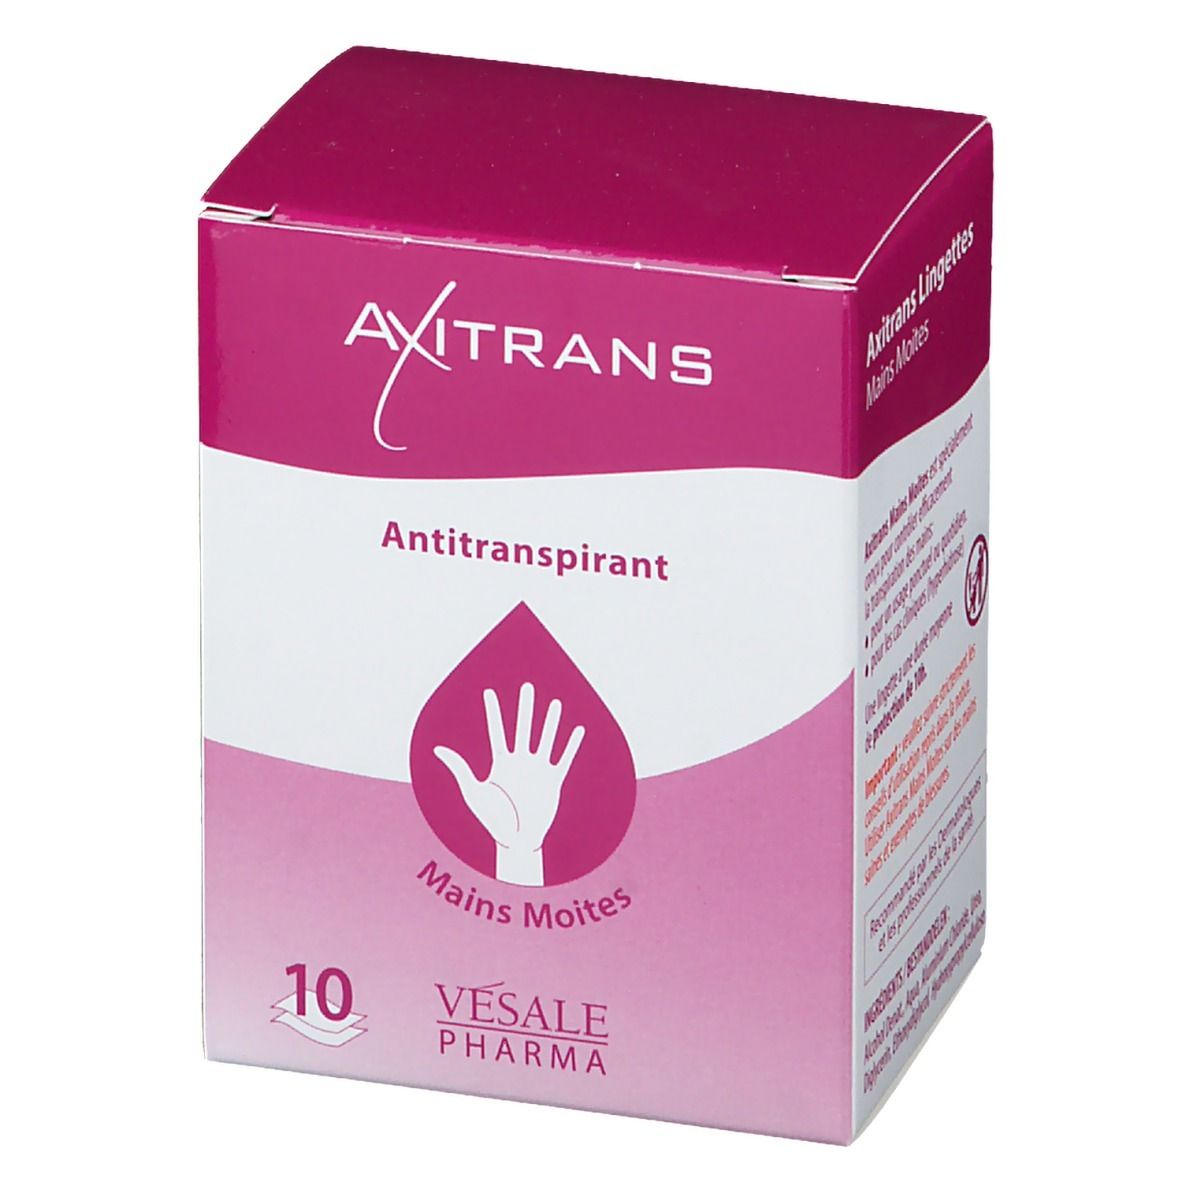 AXITRANS Antitranspirant Mains moites